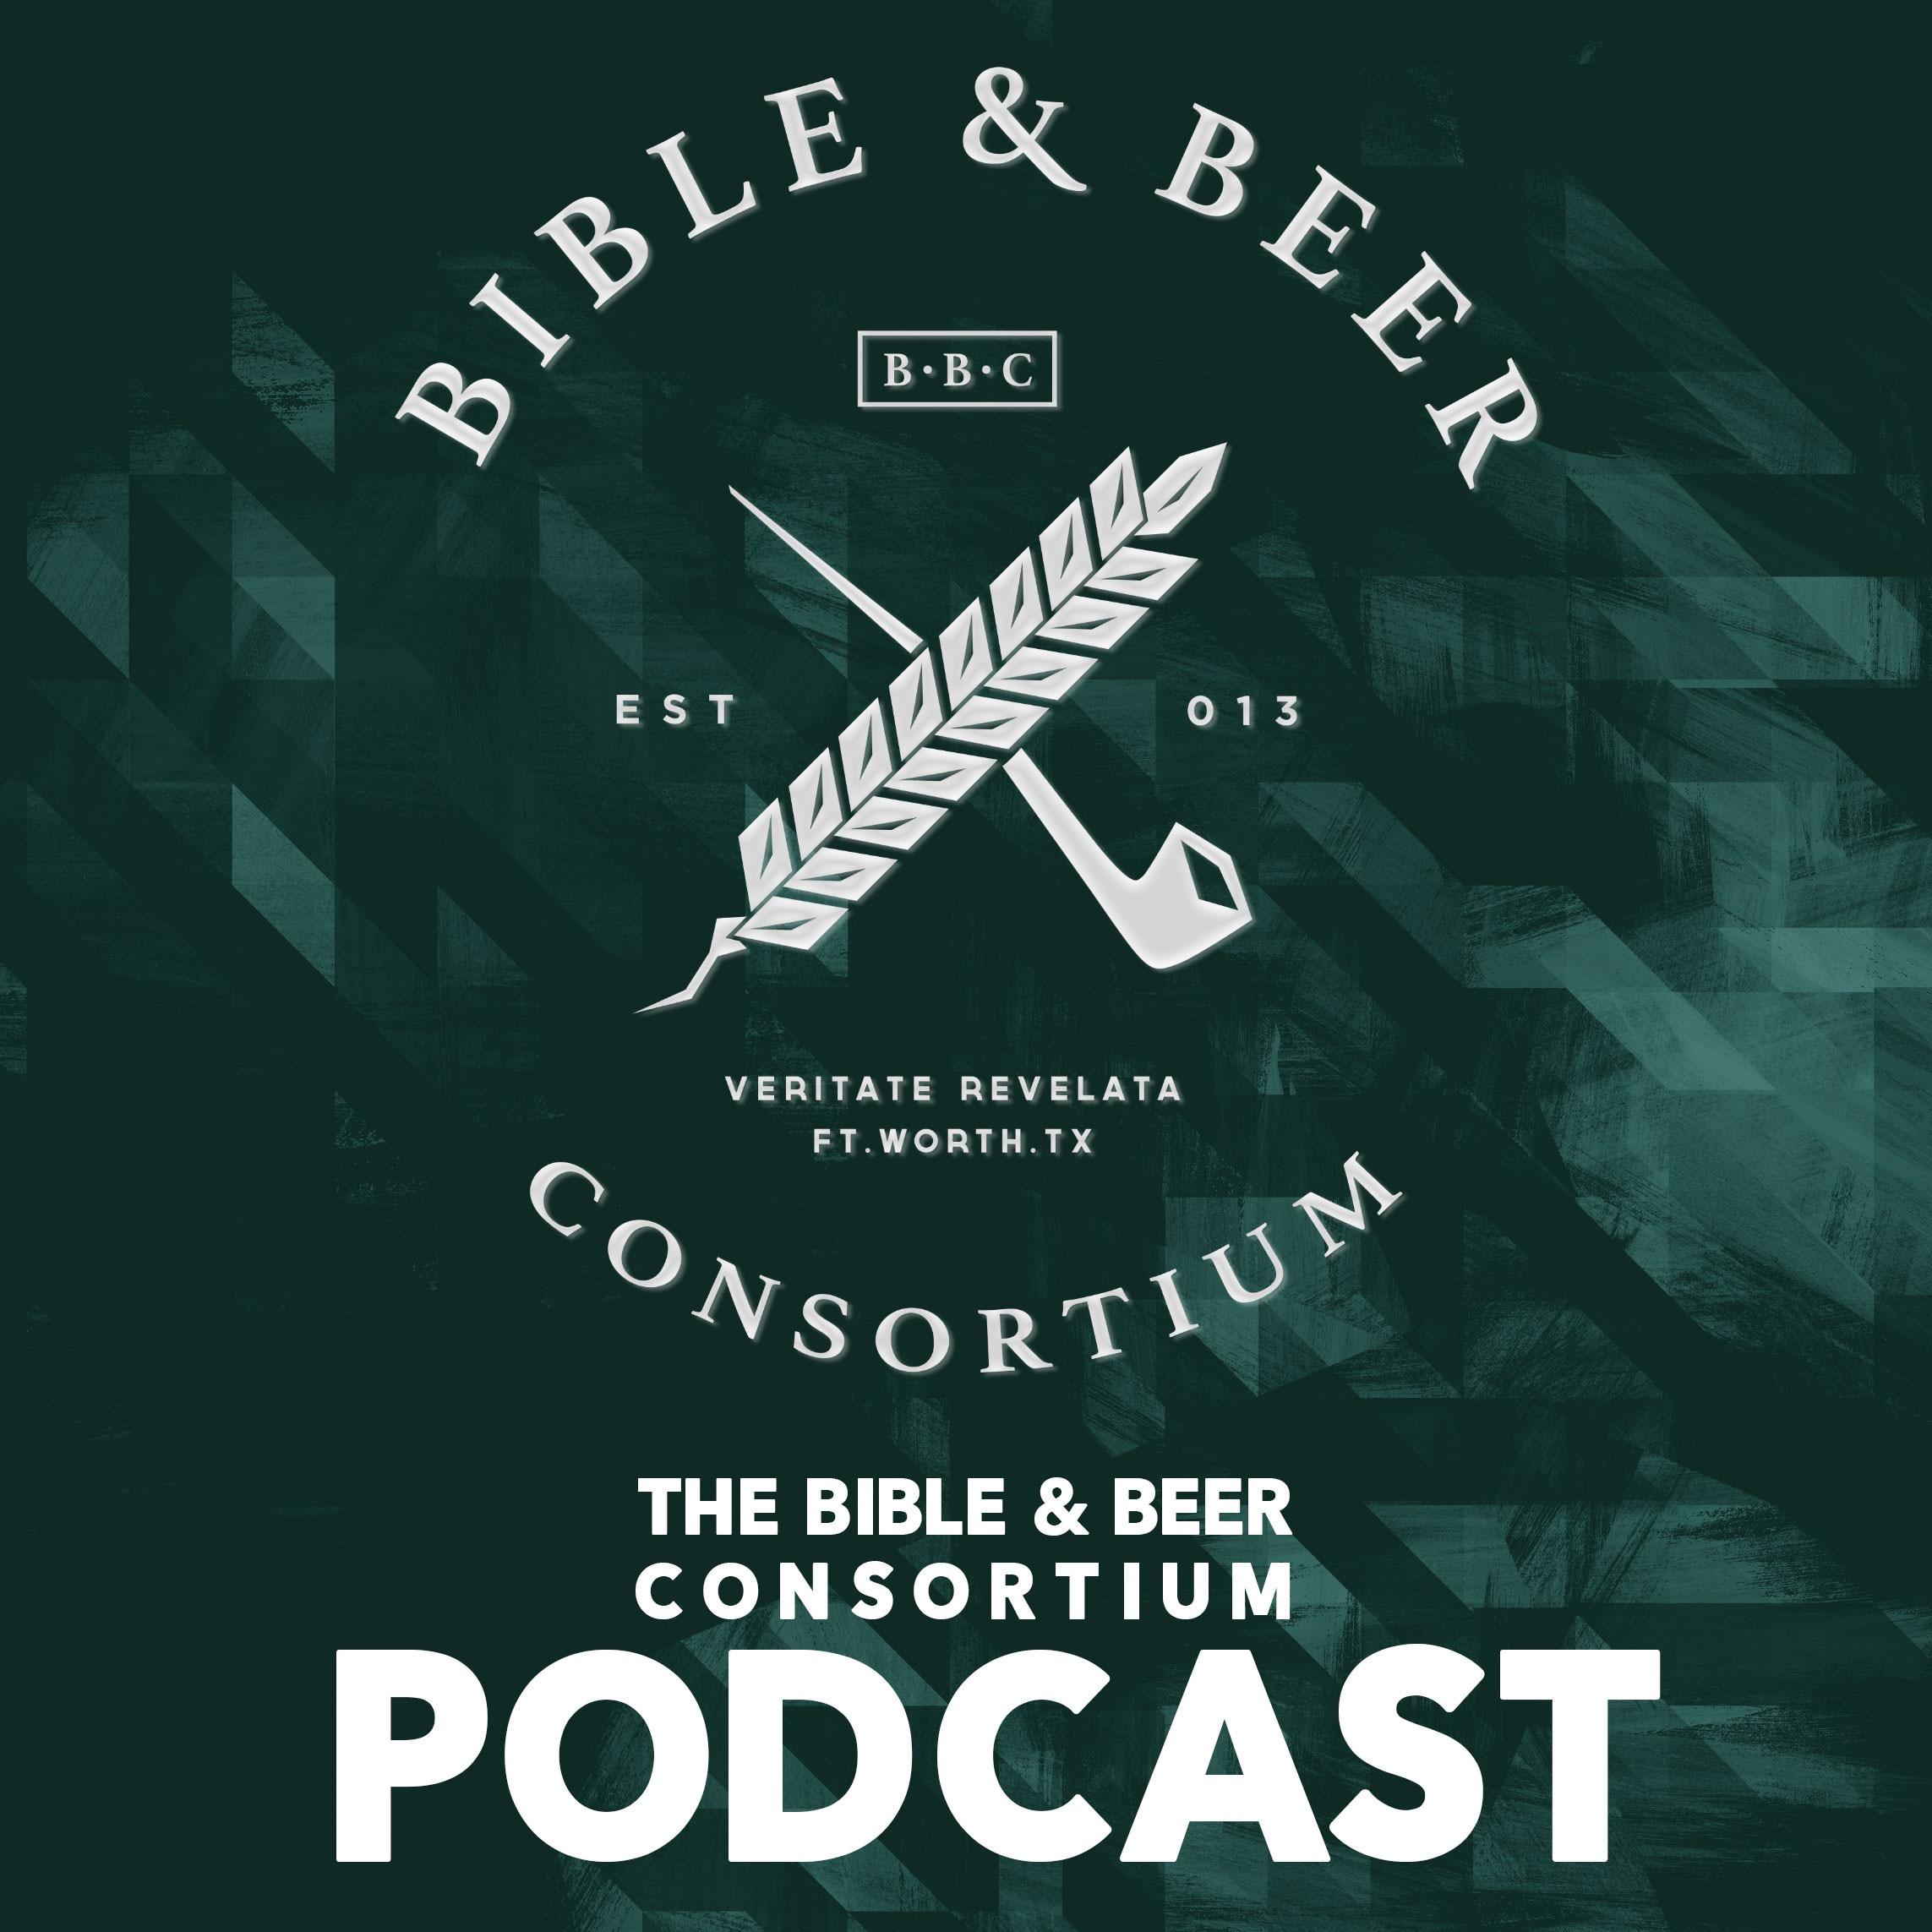 The Bible & Beer Consortium